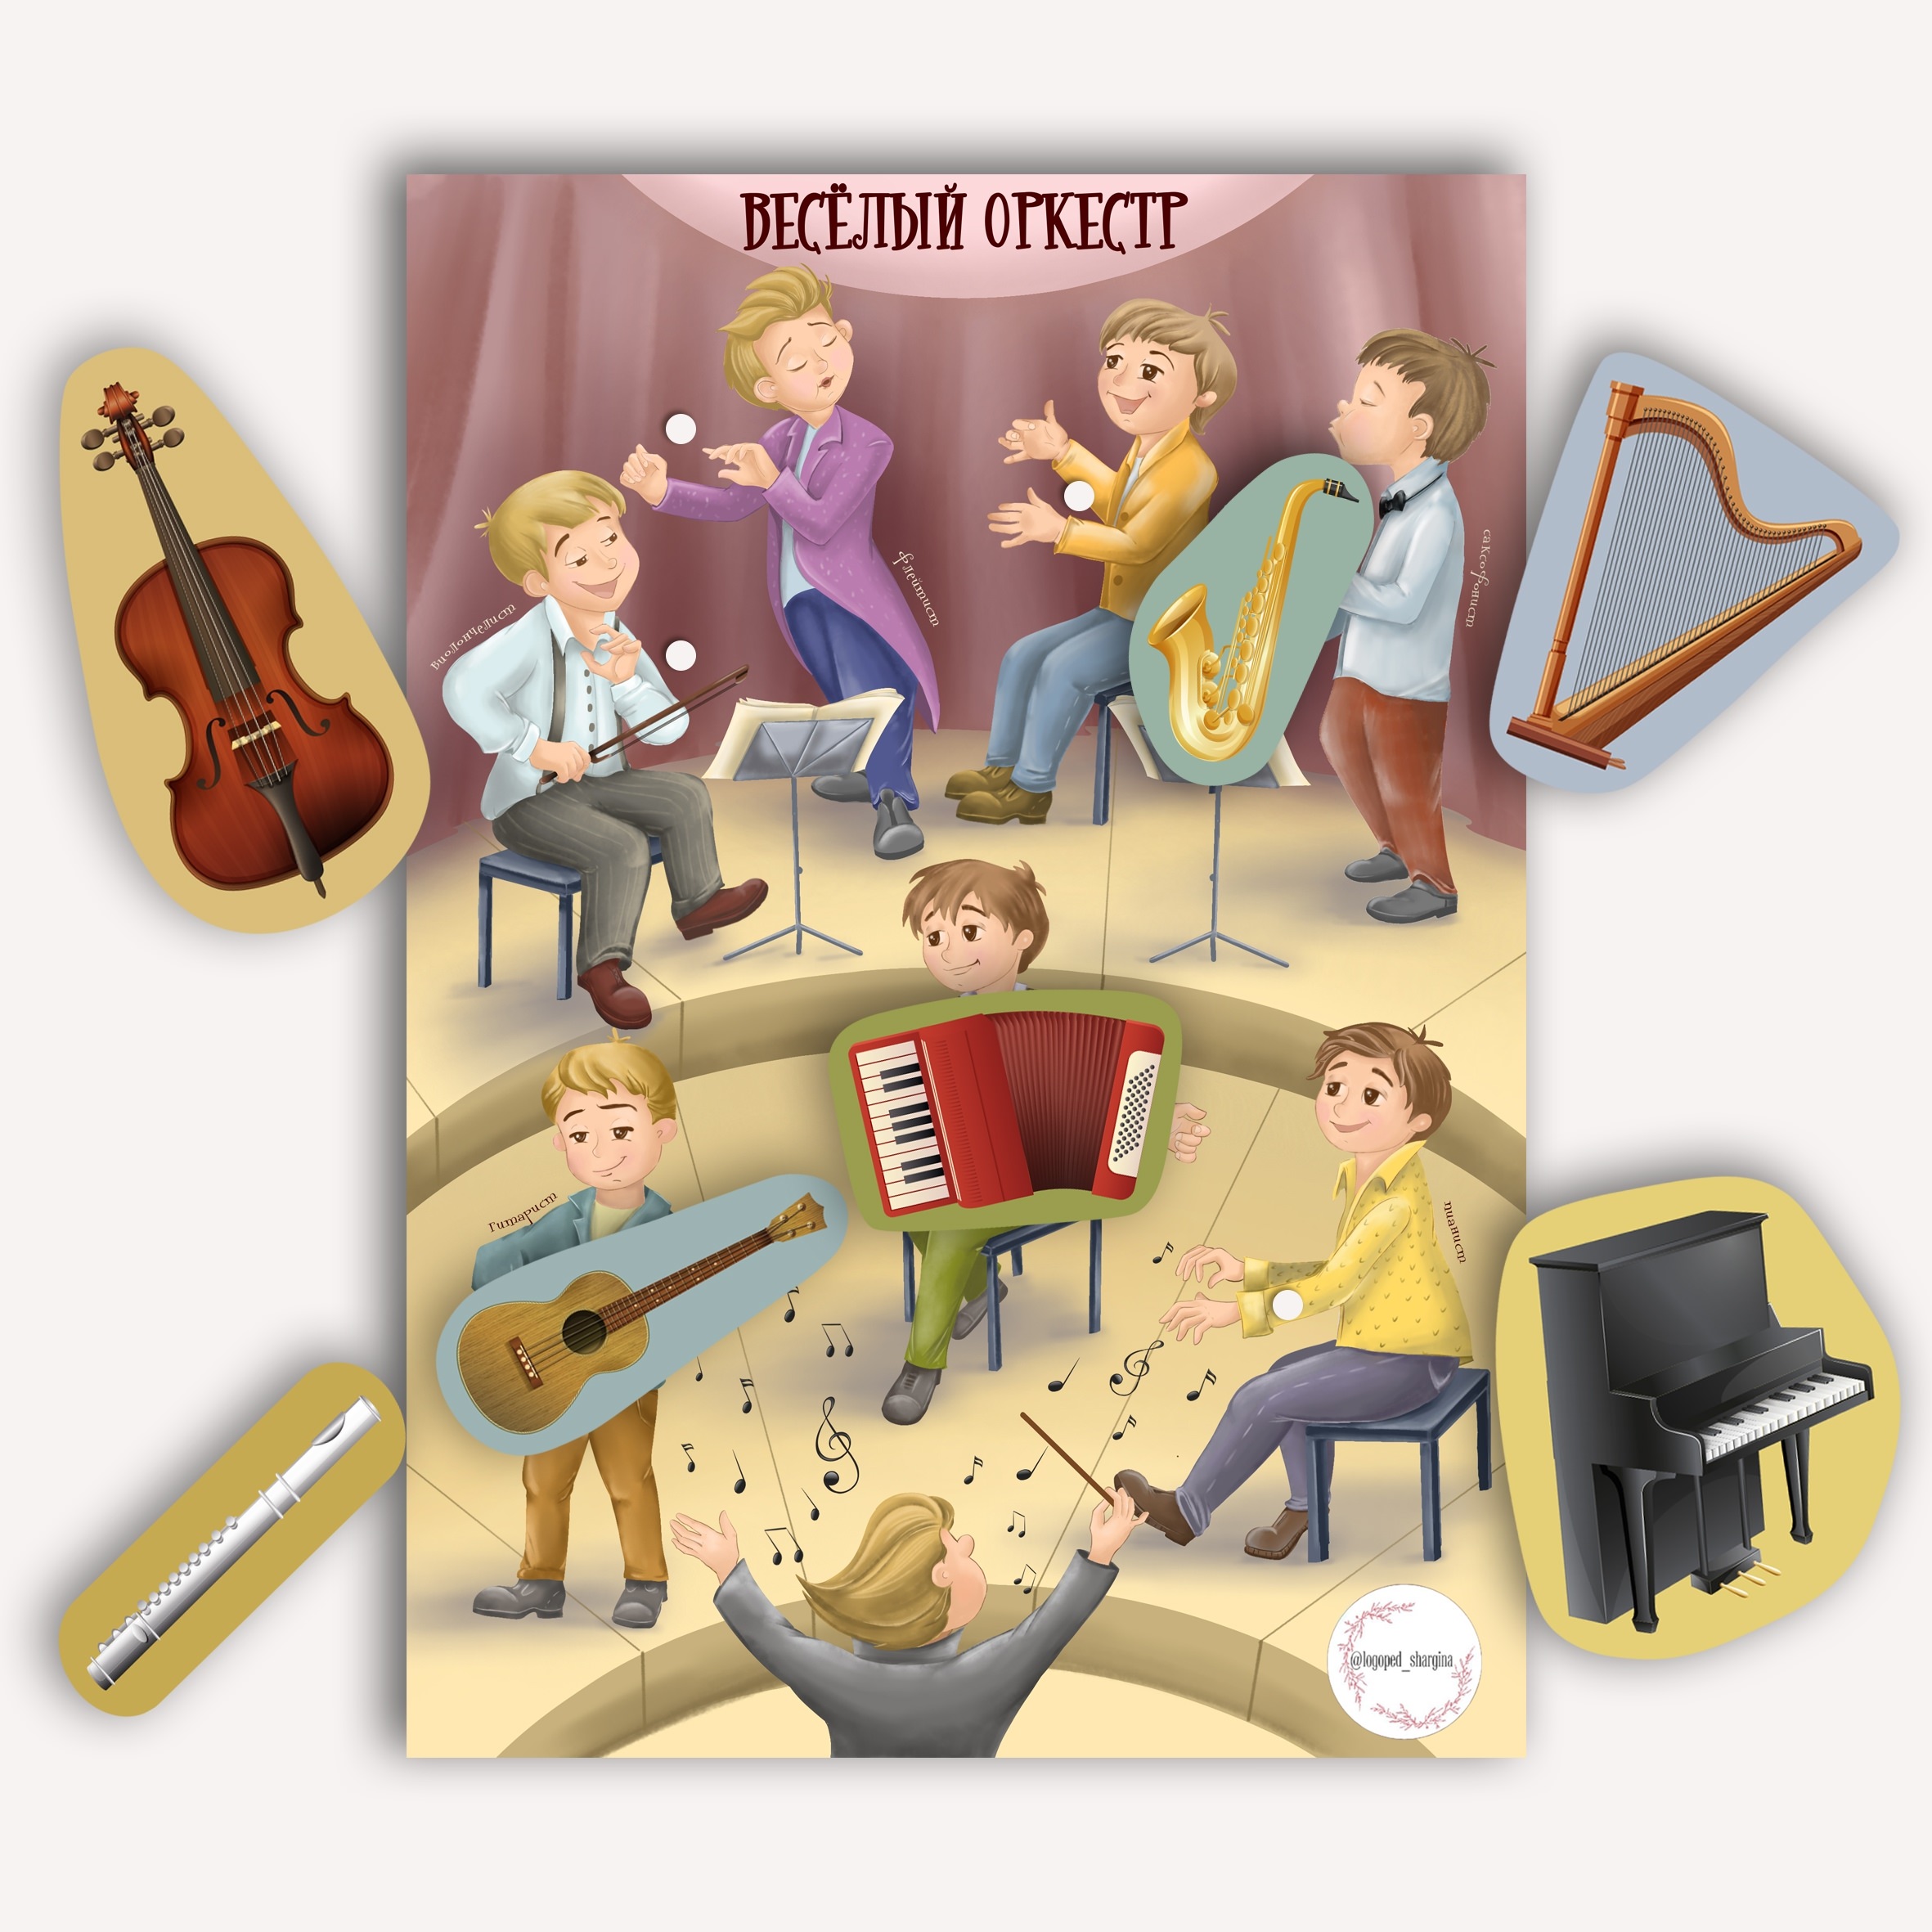 Музыкальная игра оркестр. Оркестр для детей в детском саду. Оркестр картинка для детей. Веселый оркестр. Оркестр рисунок для детей.